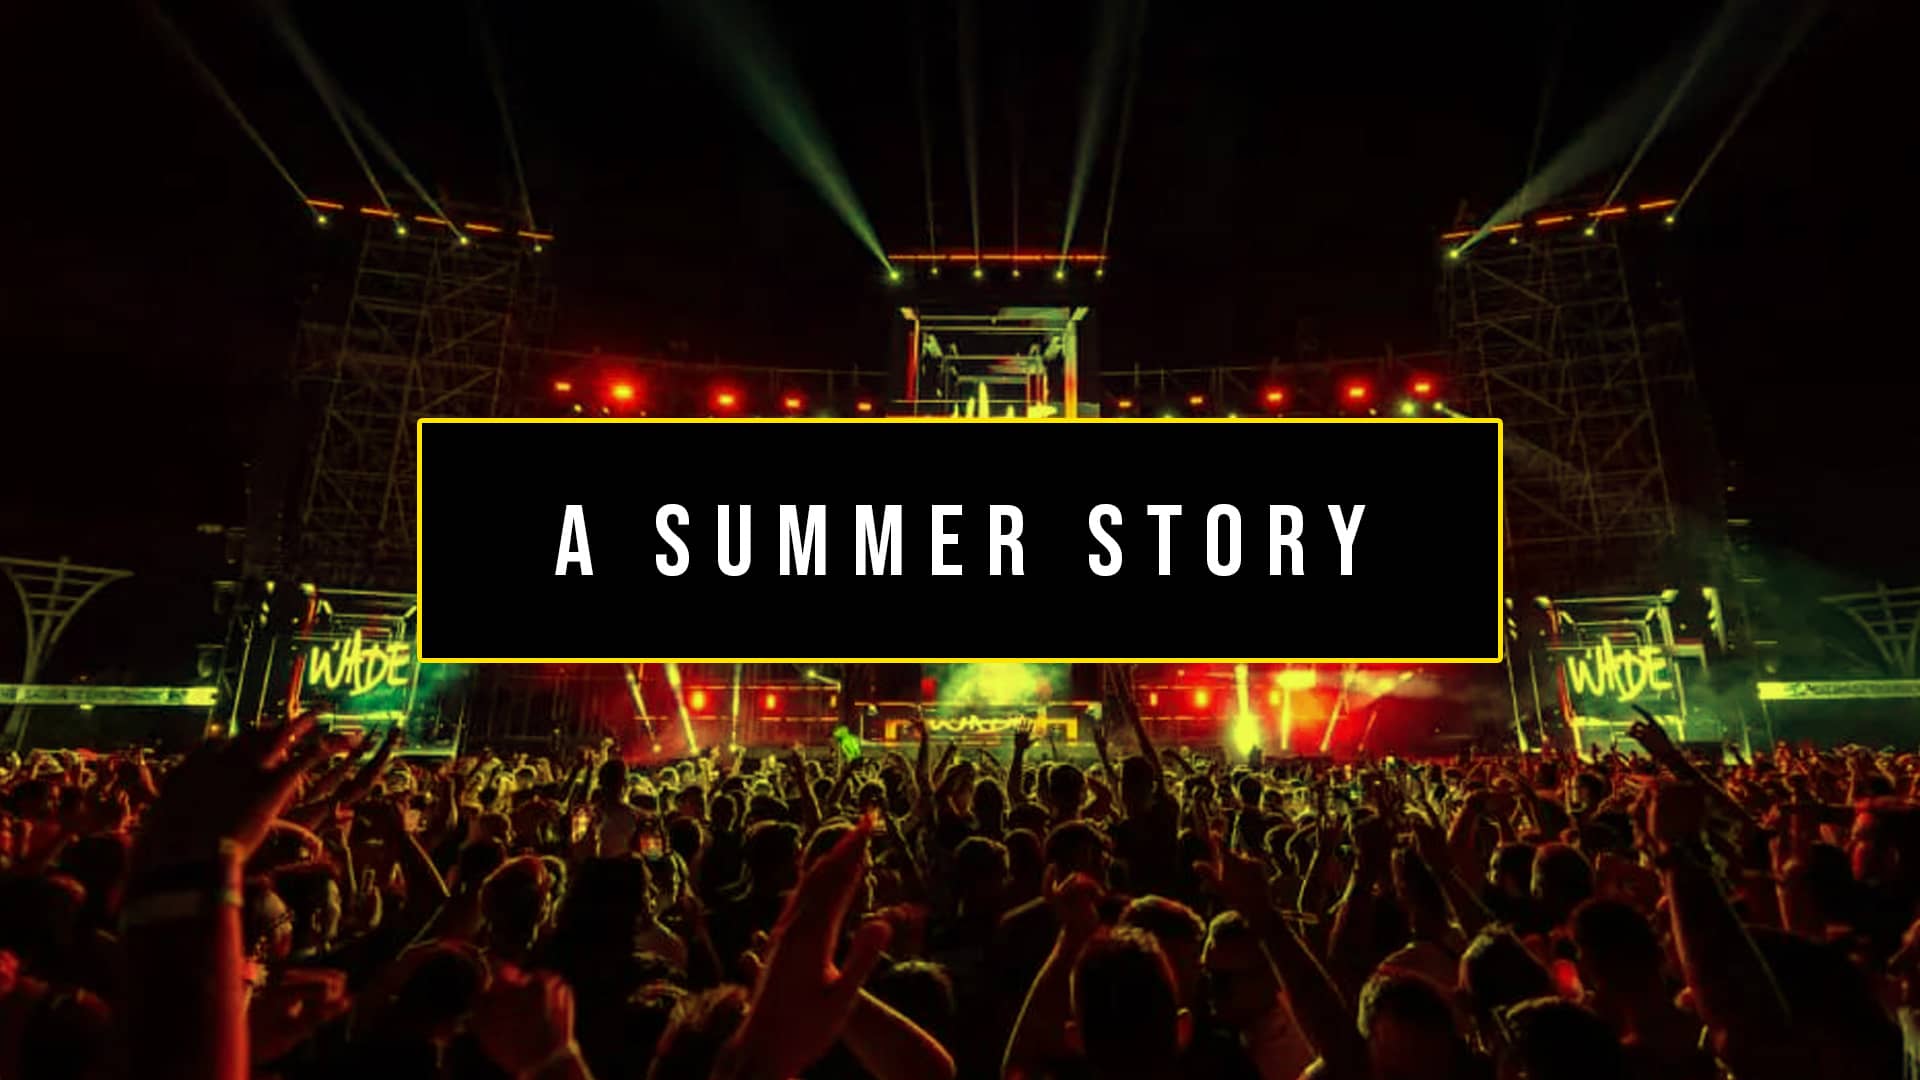 A summer story - explora info del festival en madrid como los artistas, precios, recinto, fechas y más